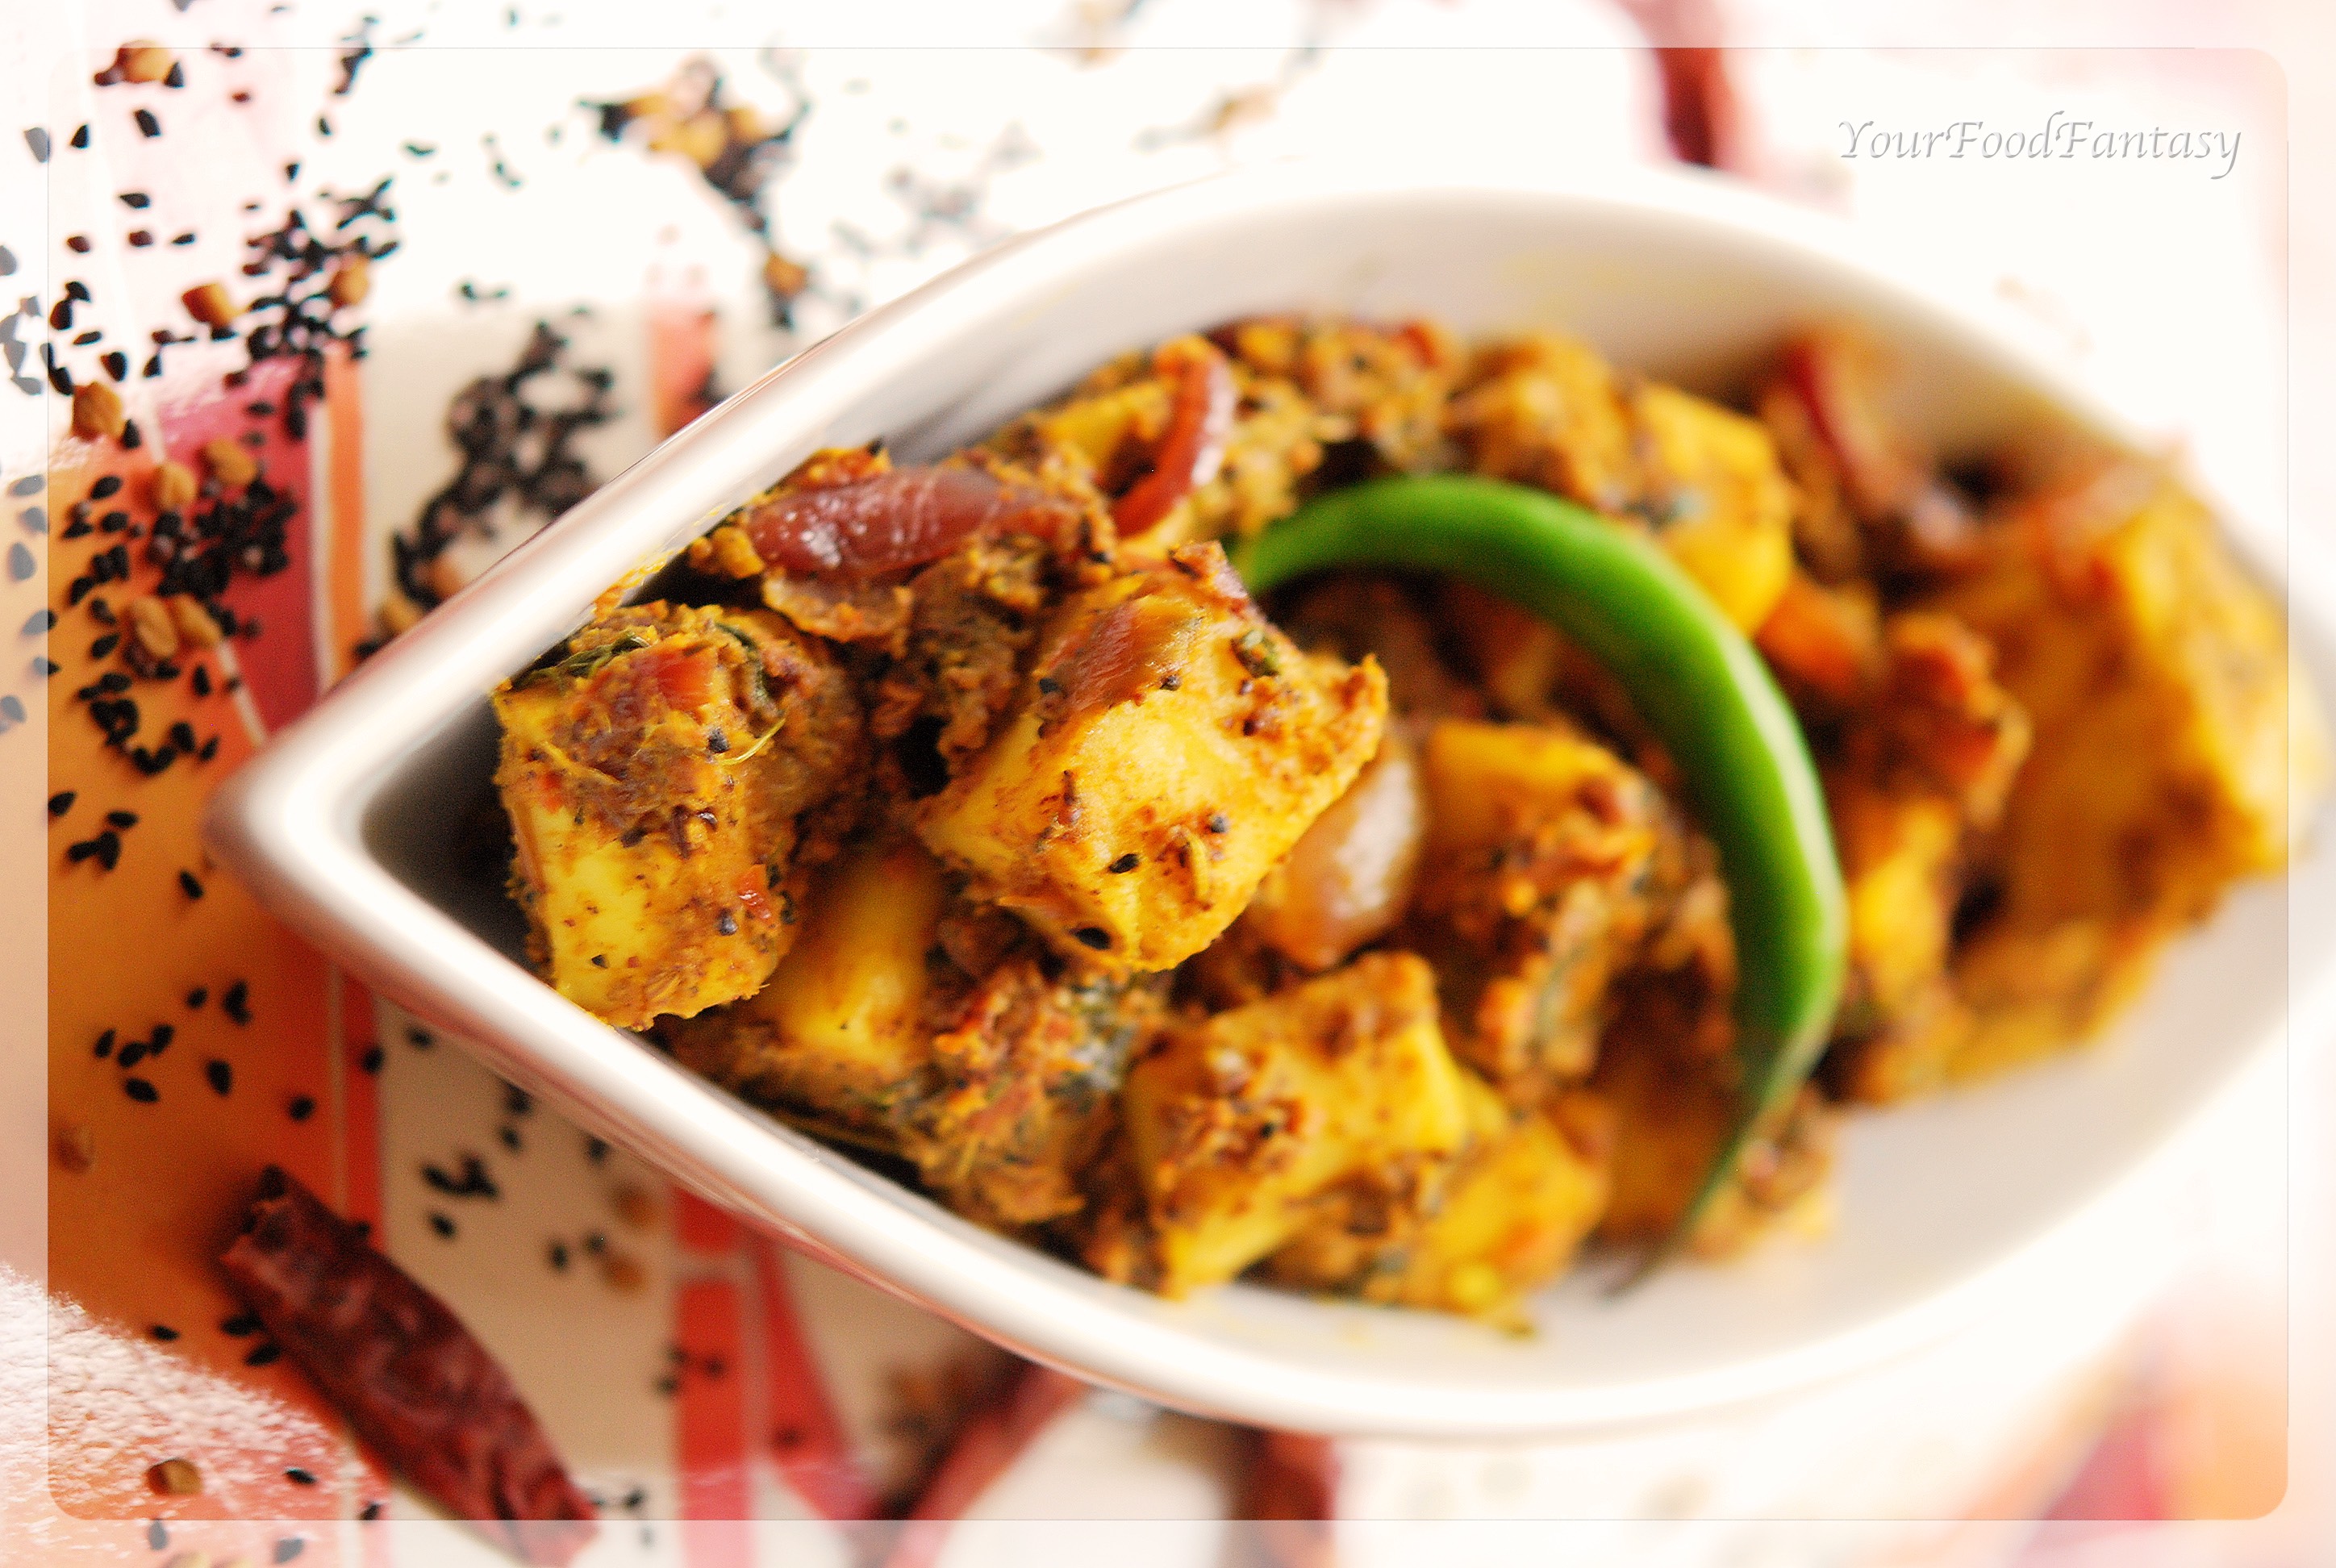 delicious masala paneer recipe| yourfoodfantasy.com by meenu gupta